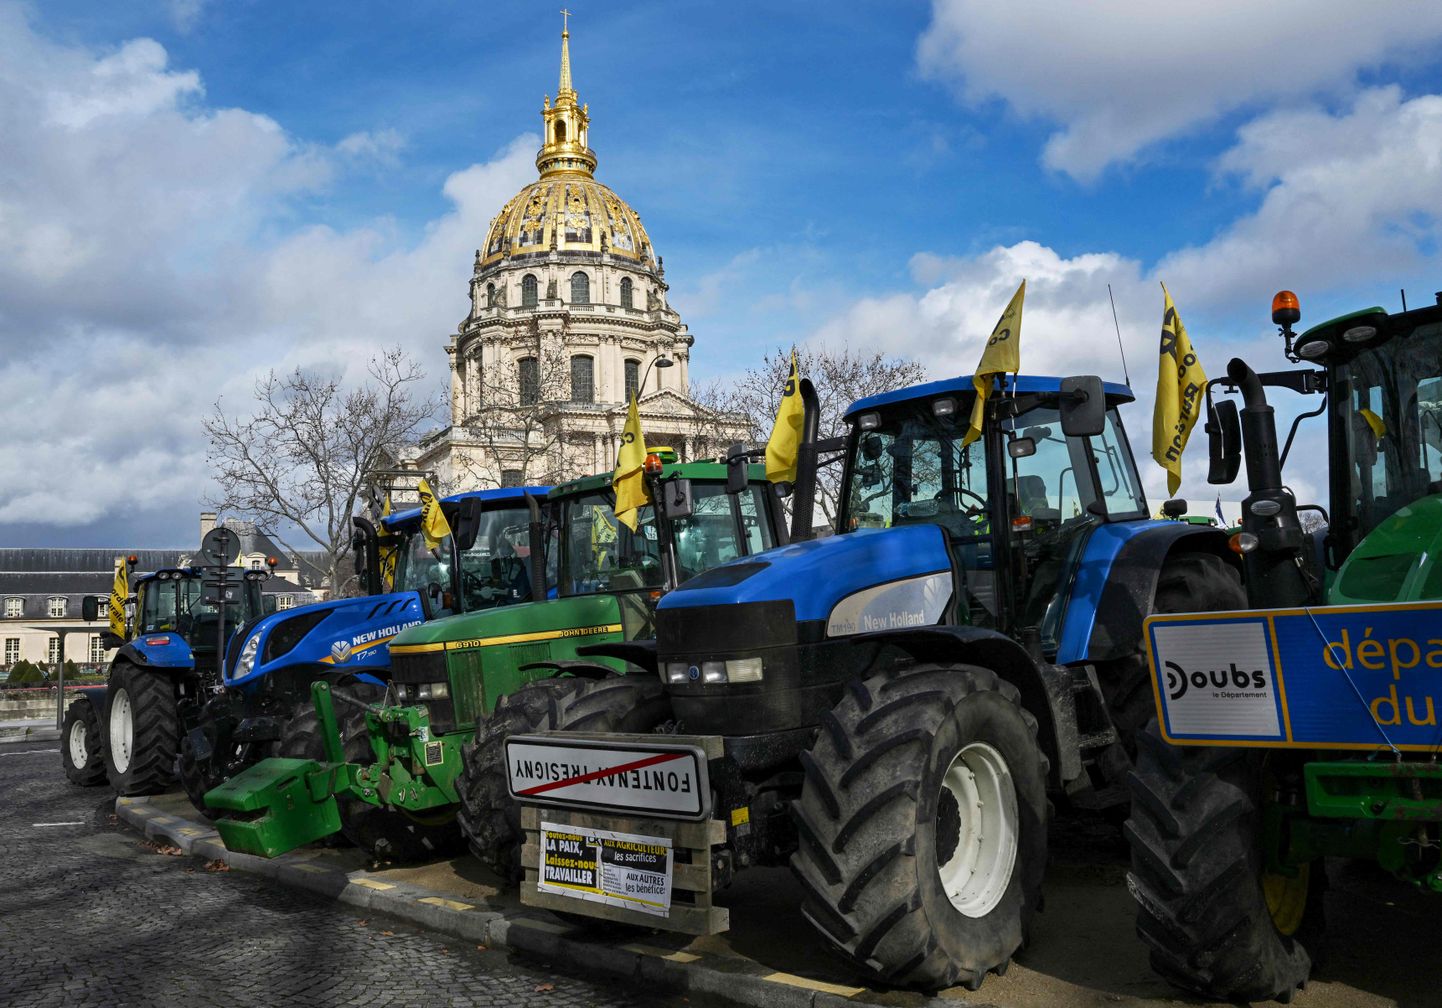 Prantsuse protestivad põllumehed Pariisis.